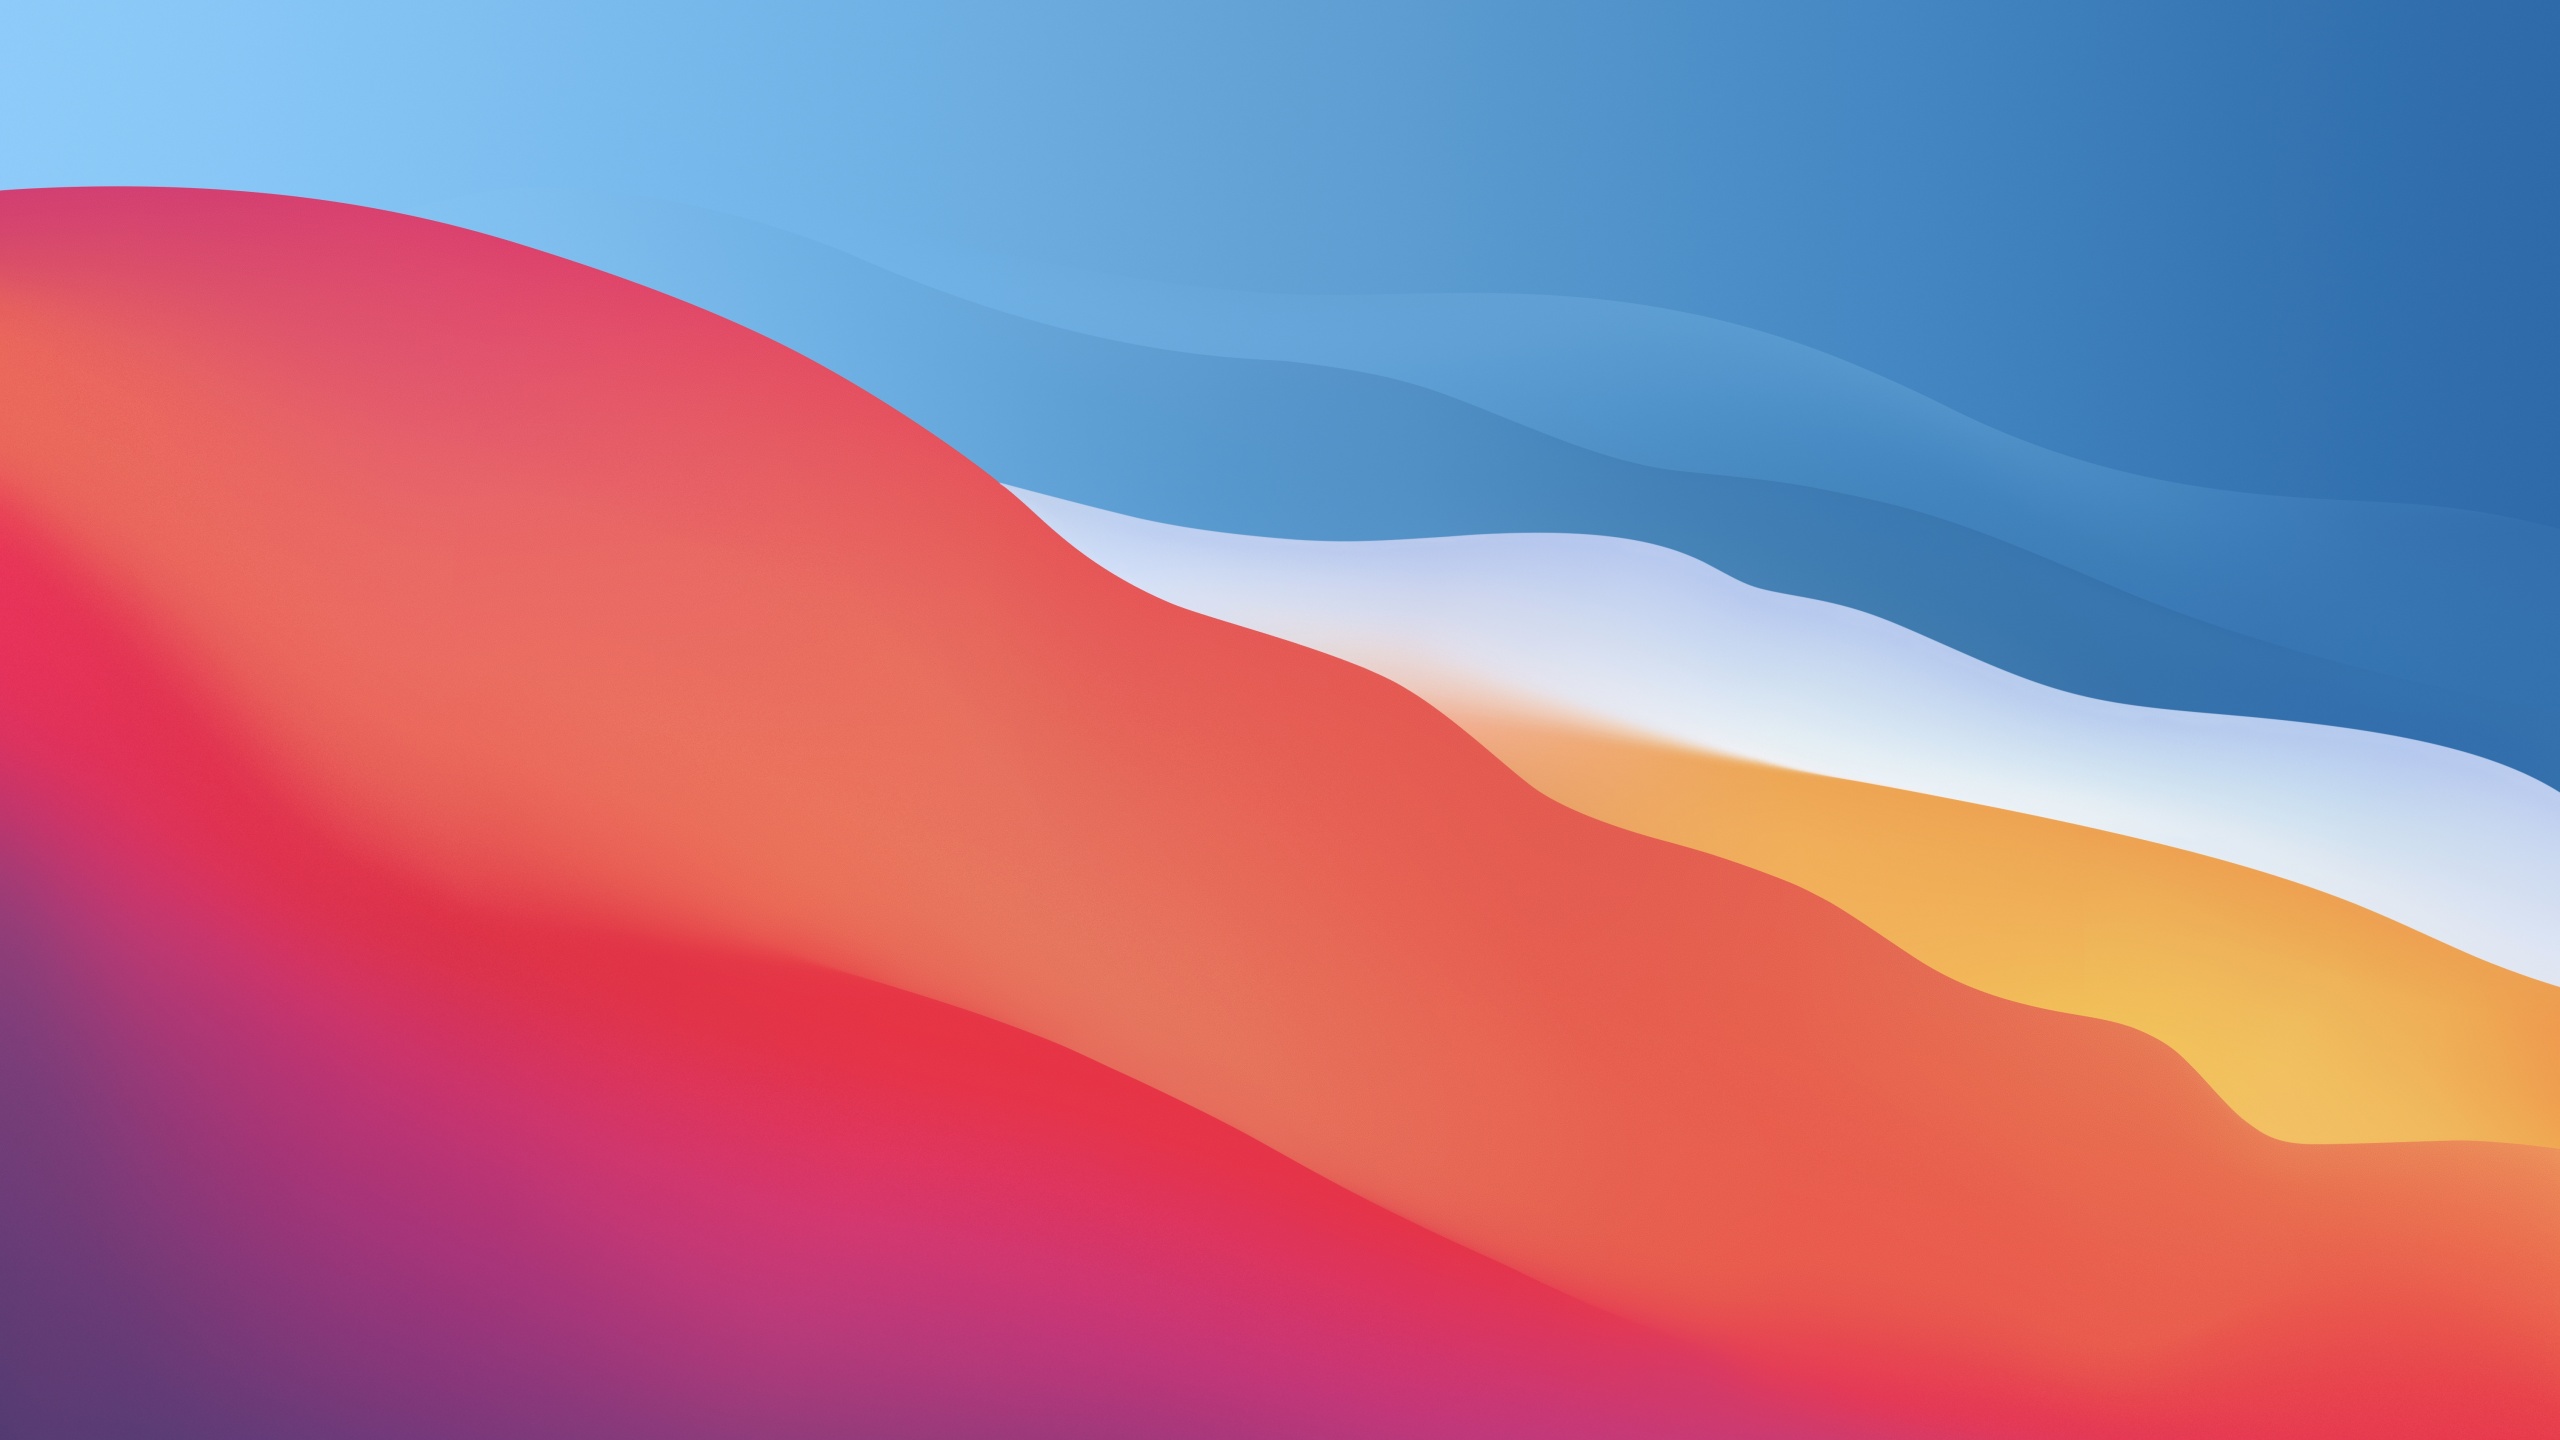 Hình nền macOS Big Sur 4K: Với độ phân giải 4K sắc nét, hình nền Big Sur chắc chắn sẽ khiến màn hình của bạn trở nên sống động hơn bao giờ hết. Hãy cùng chiêm ngưỡng bức hình đẹp này và cùng trải nghiệm tuyệt vời của macOS Big Sur.